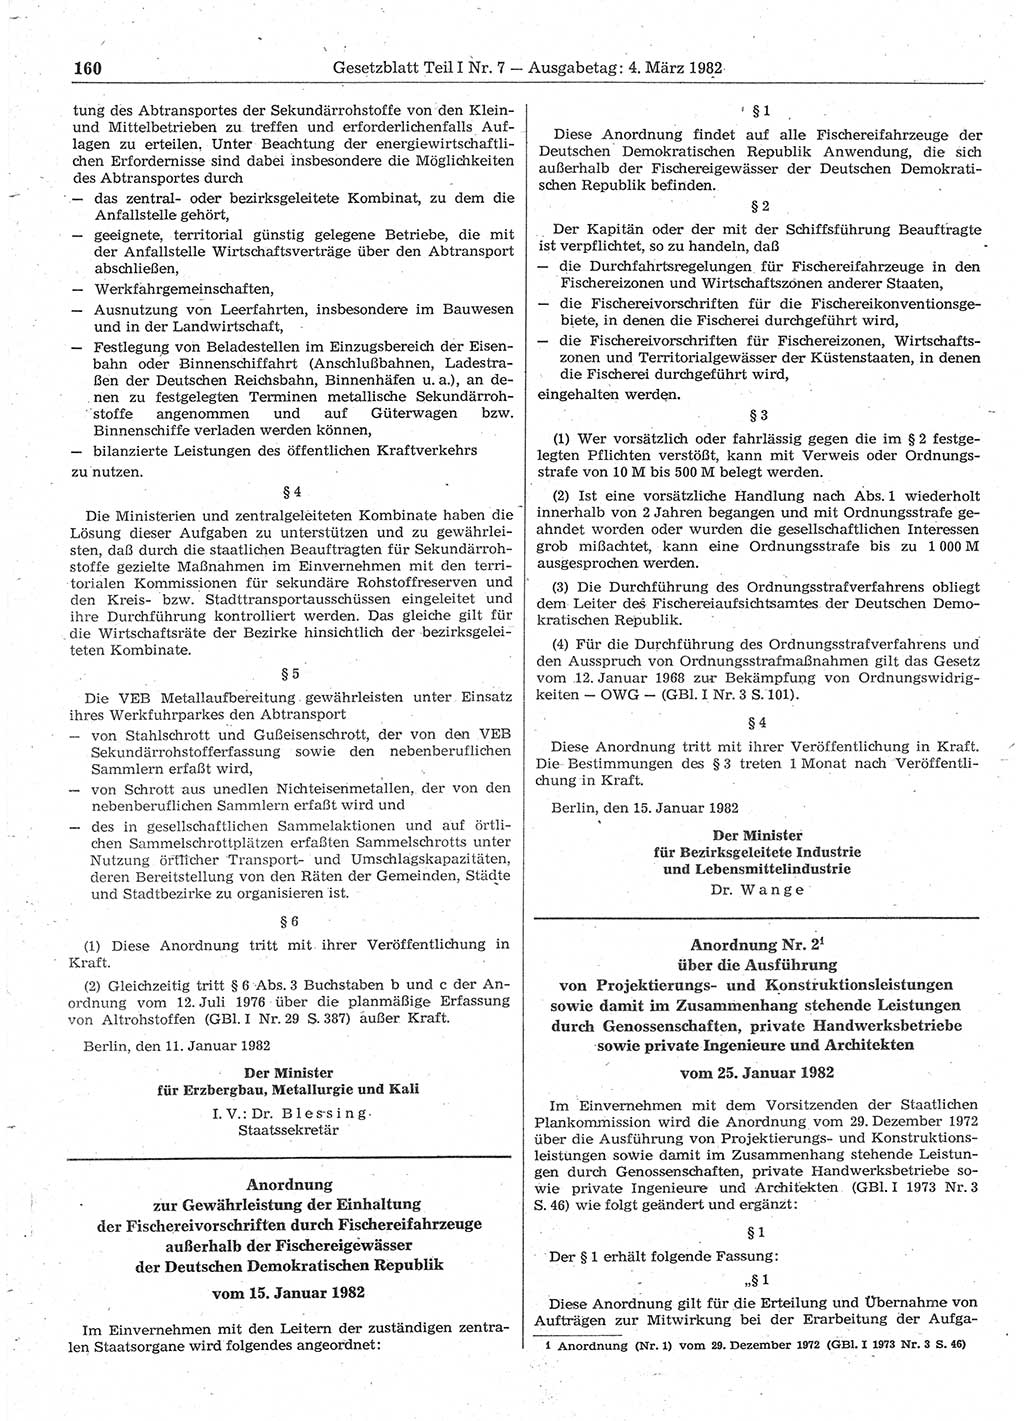 Gesetzblatt (GBl.) der Deutschen Demokratischen Republik (DDR) Teil Ⅰ 1982, Seite 160 (GBl. DDR Ⅰ 1982, S. 160)